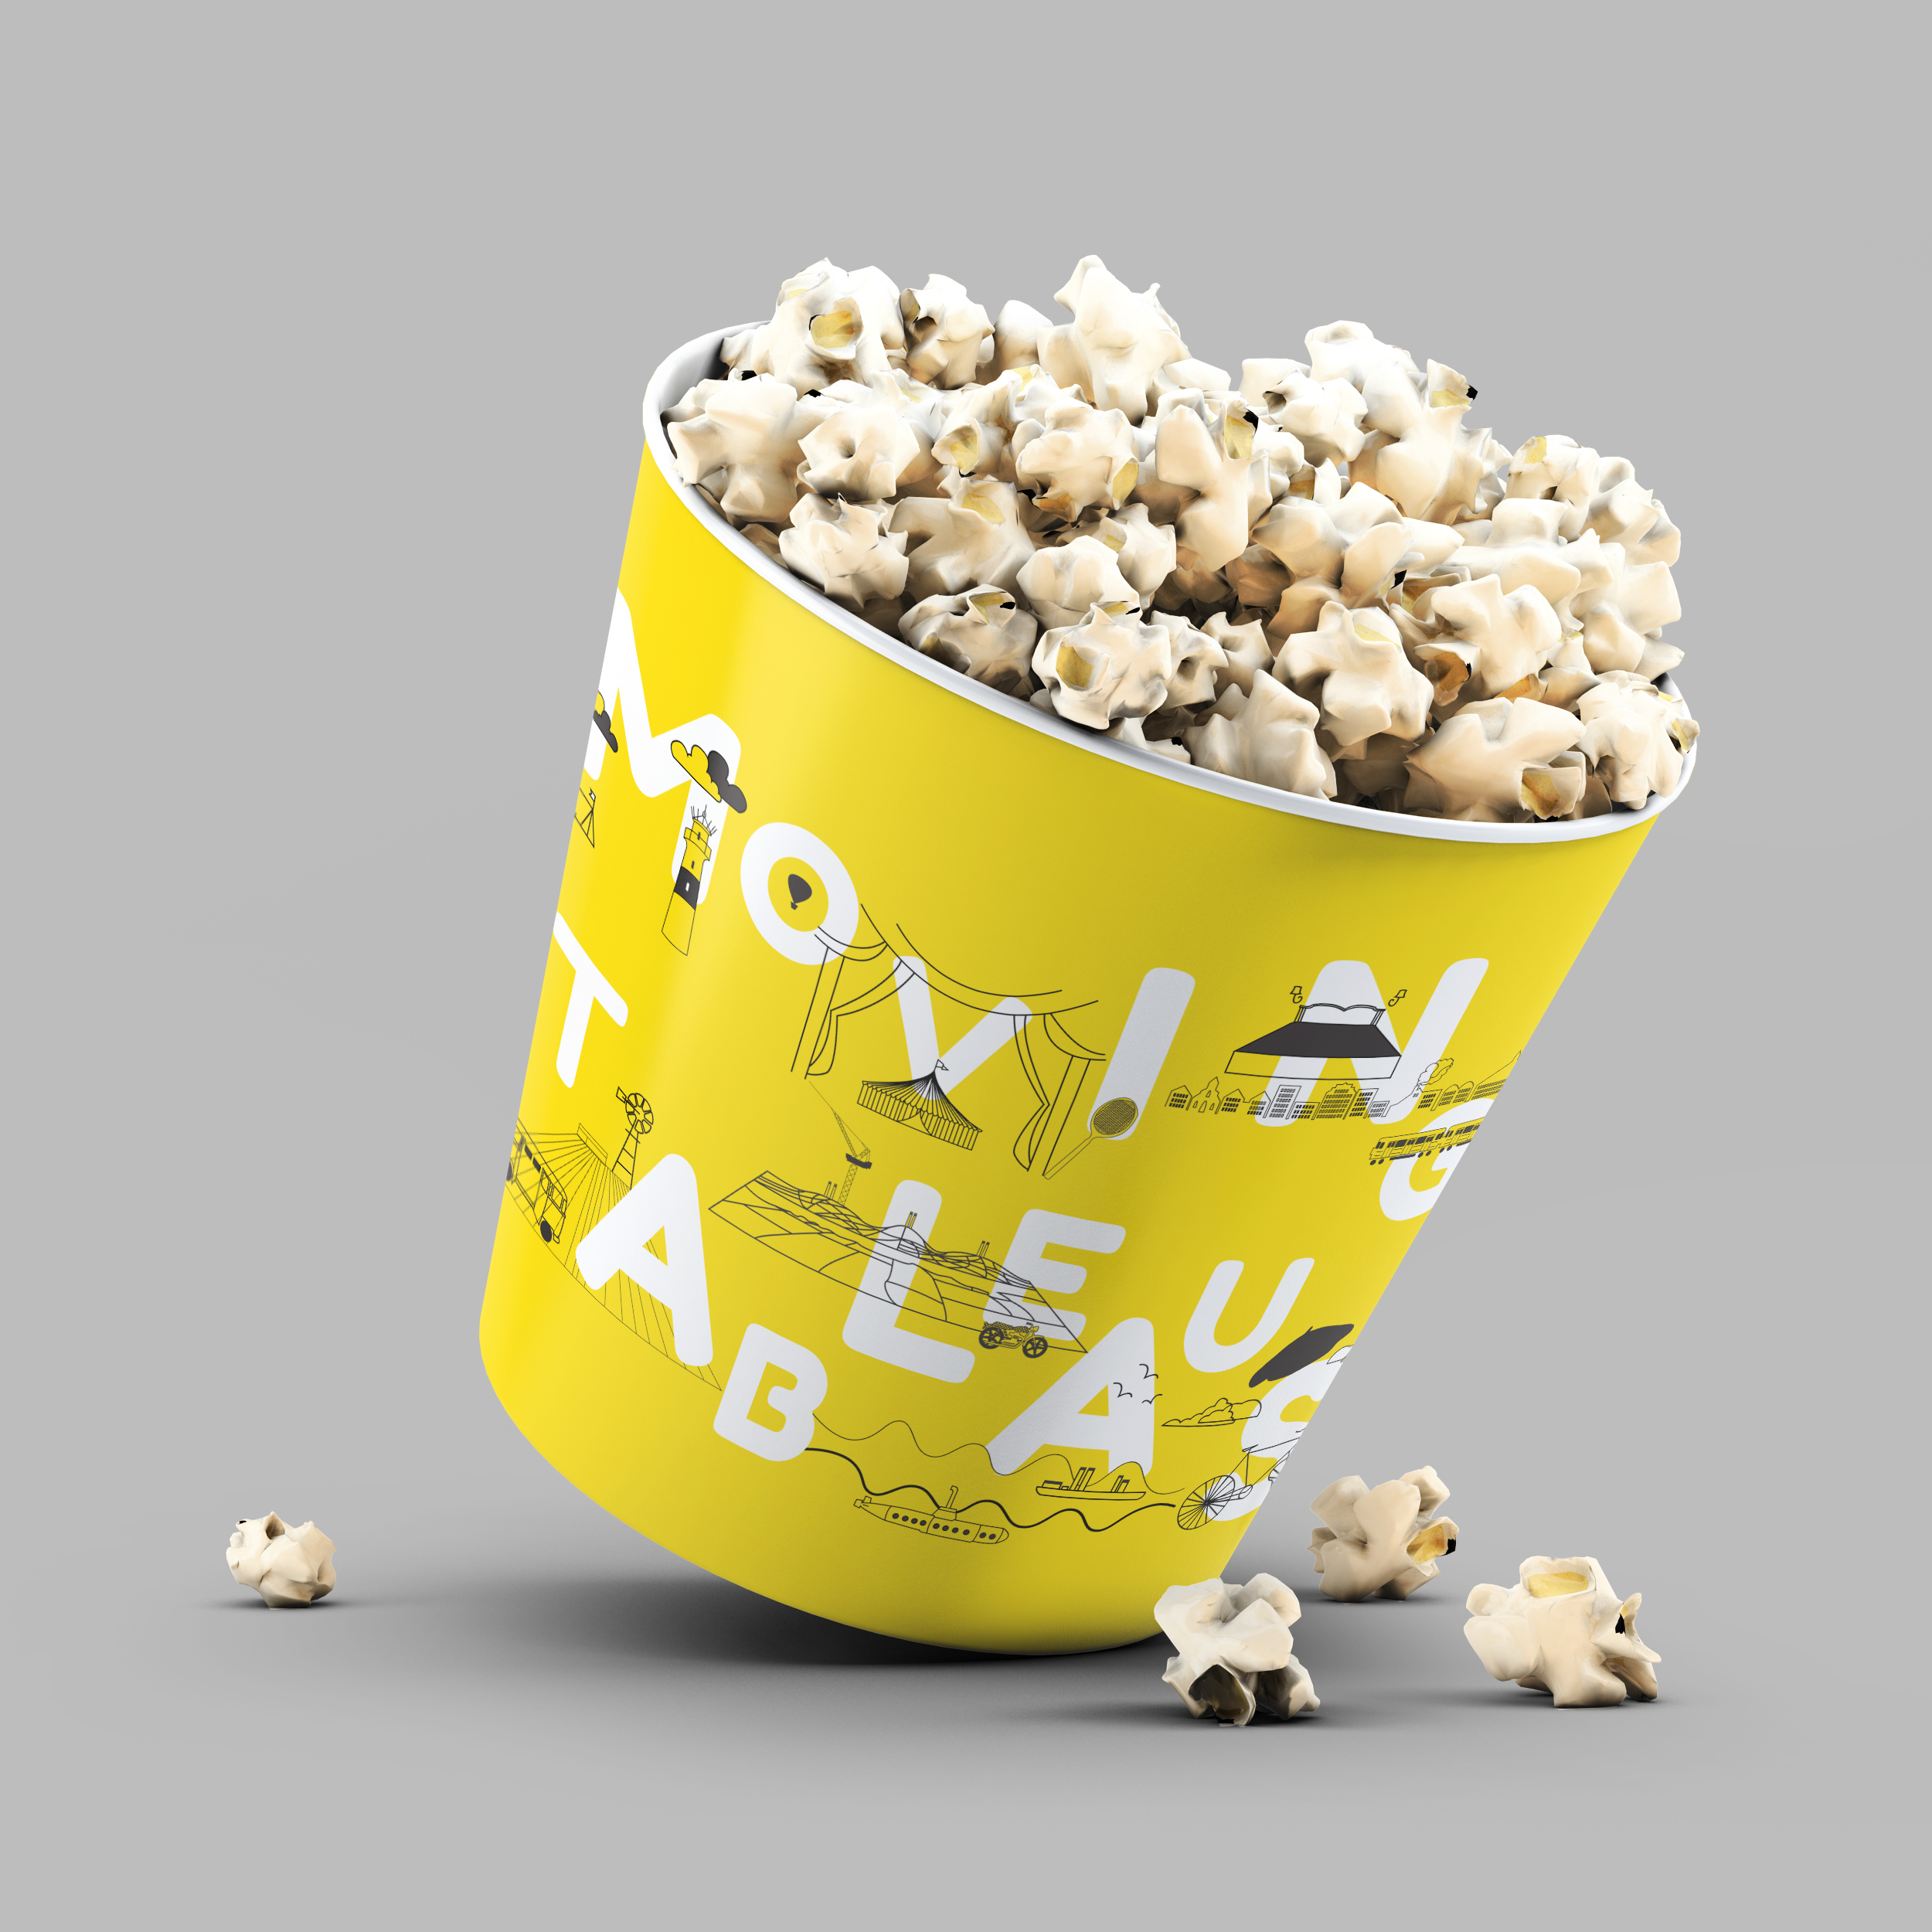 BFI_popcorn bucket mockup.jpg